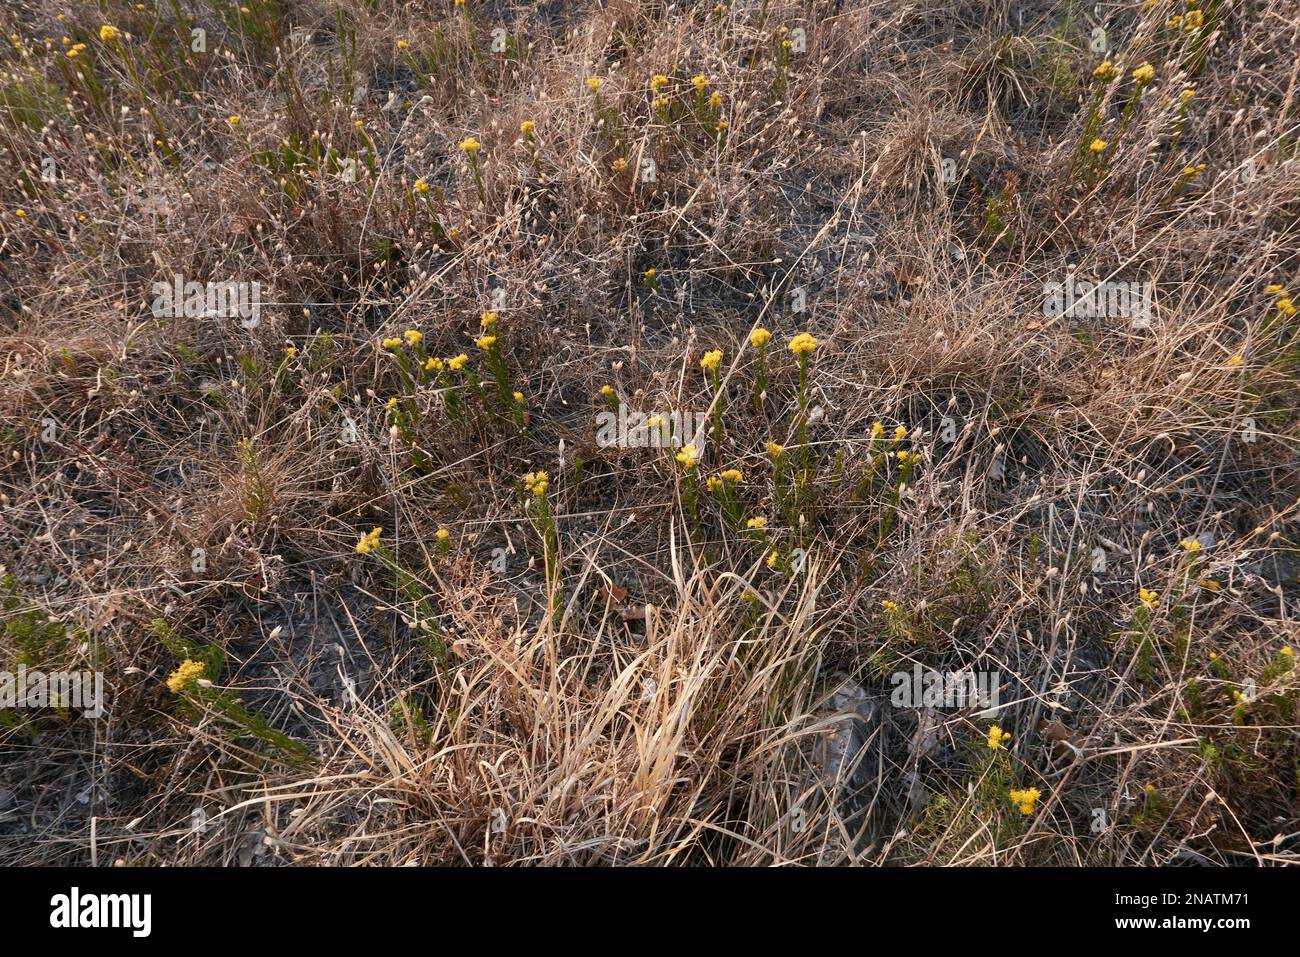 Galatella linosyris yellow flowers Stock Photo